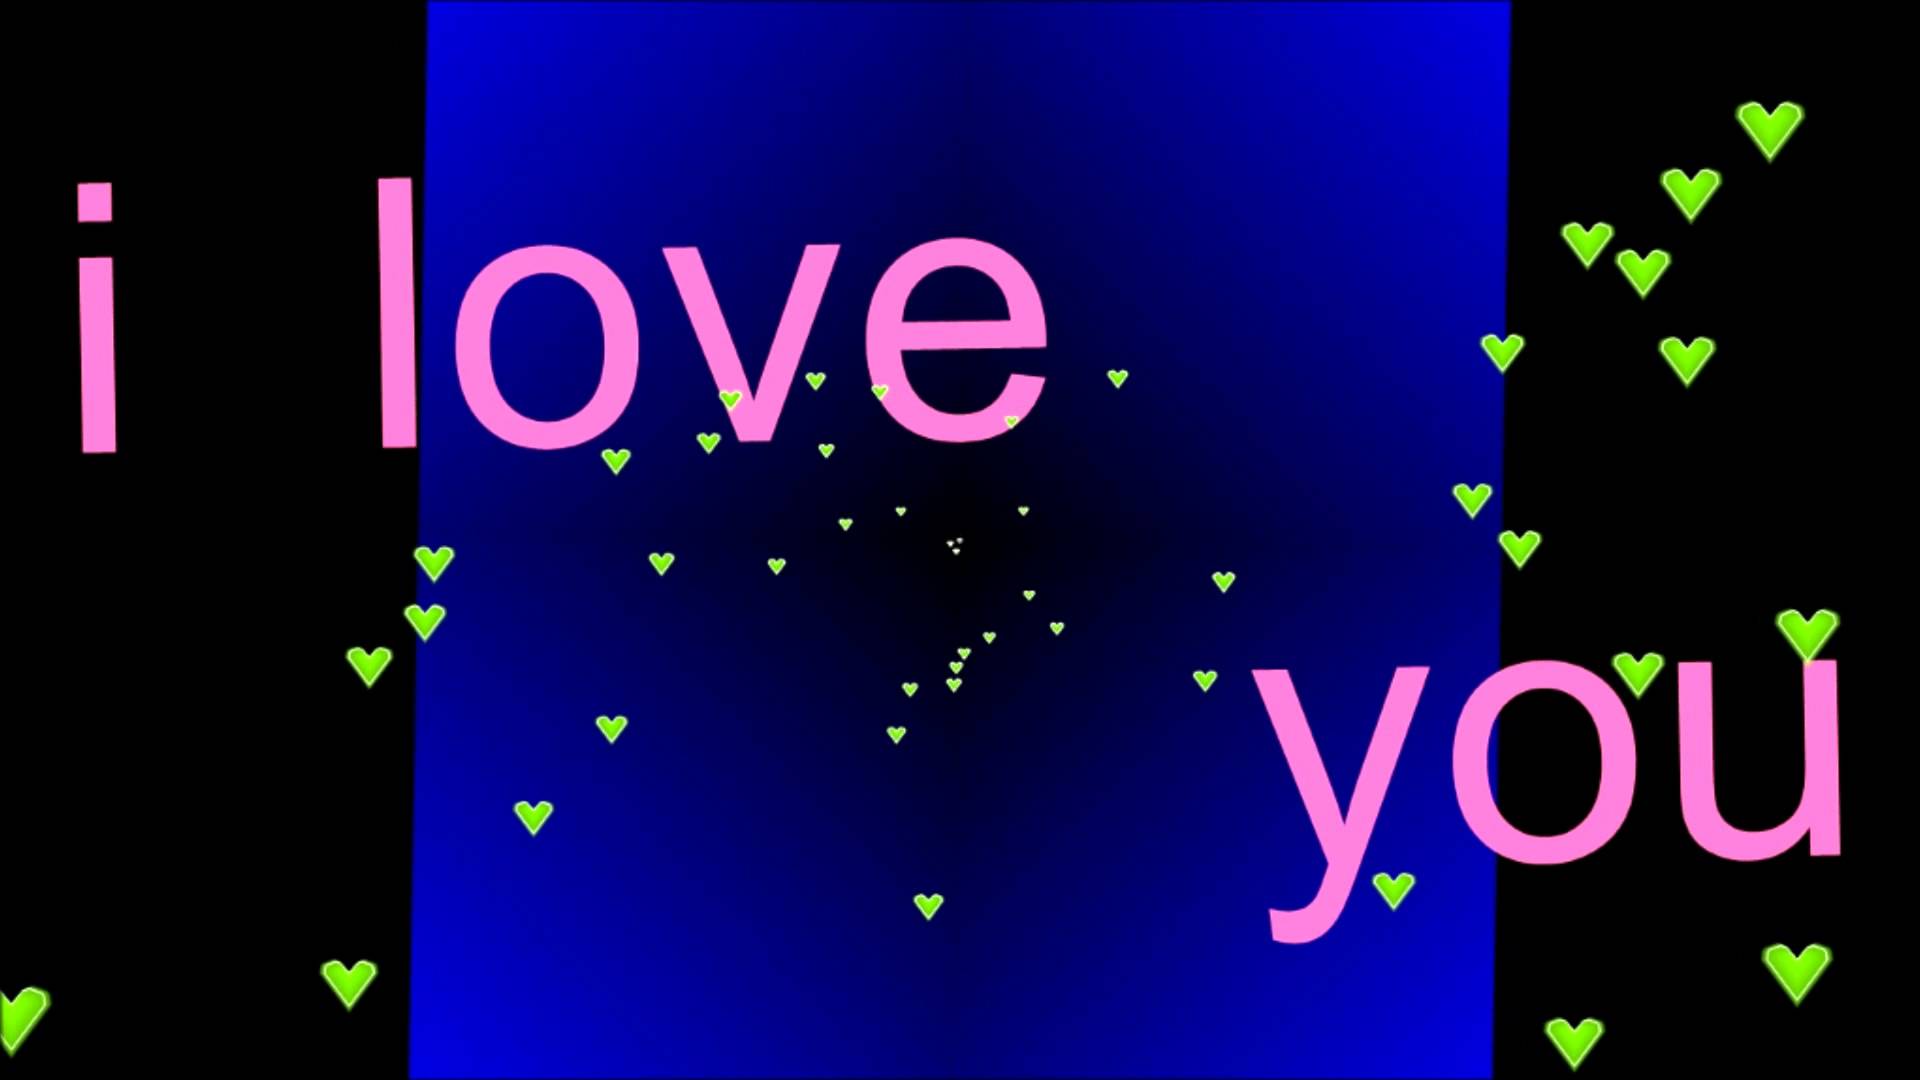 I Love You - YouTube